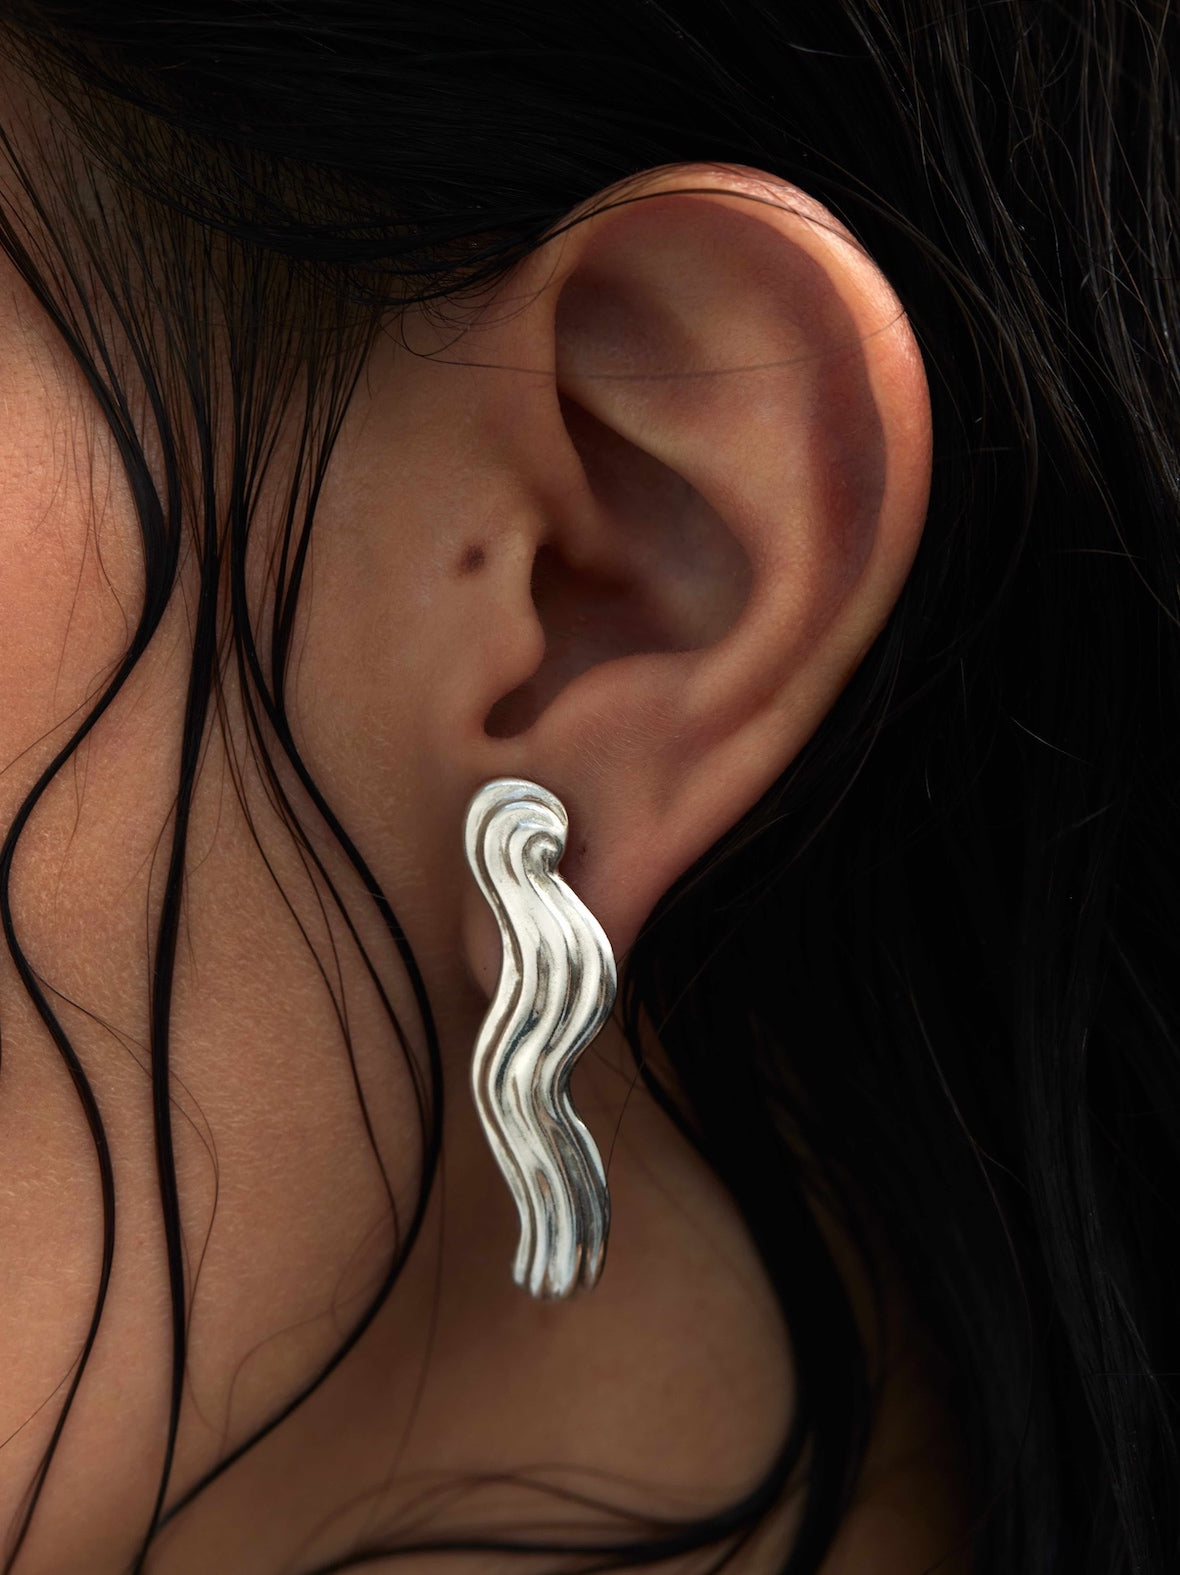 Models ear wearing a silver earring